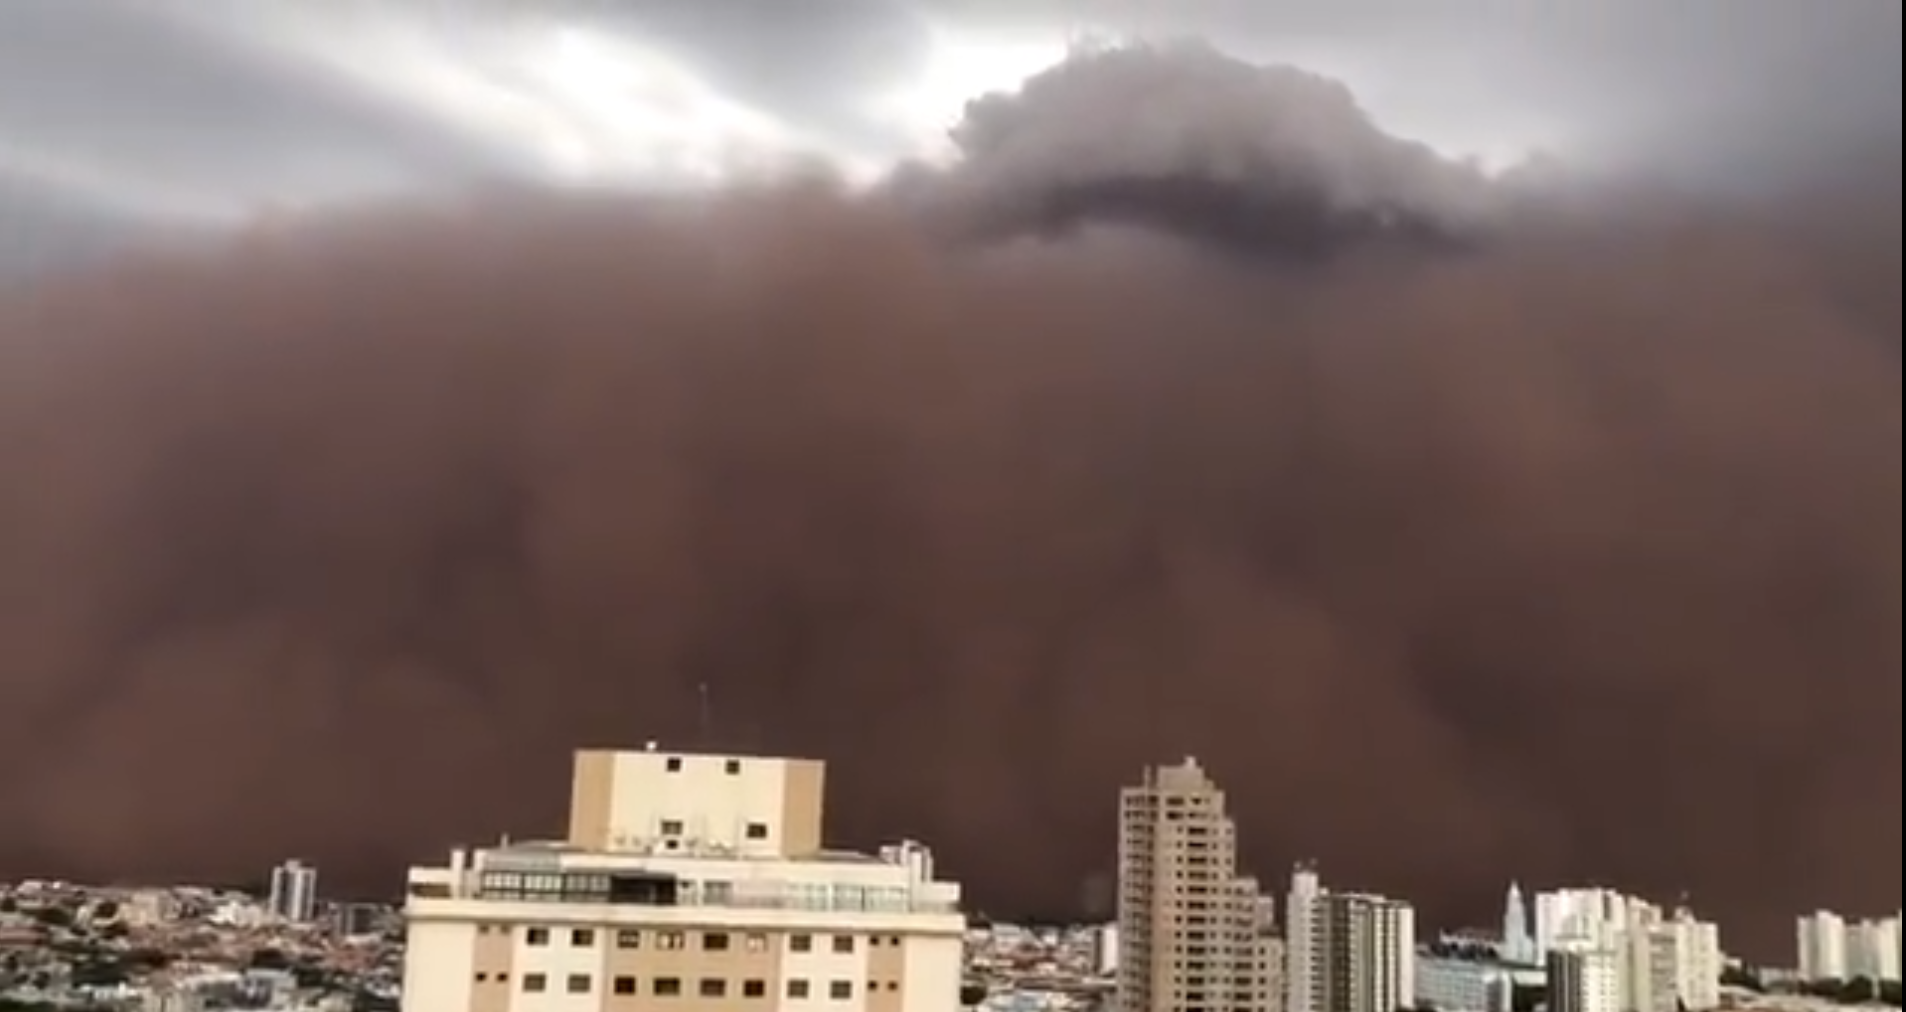 INMET explica a tempestade de poeira ocorrida no Sudeste no último domingo (26).